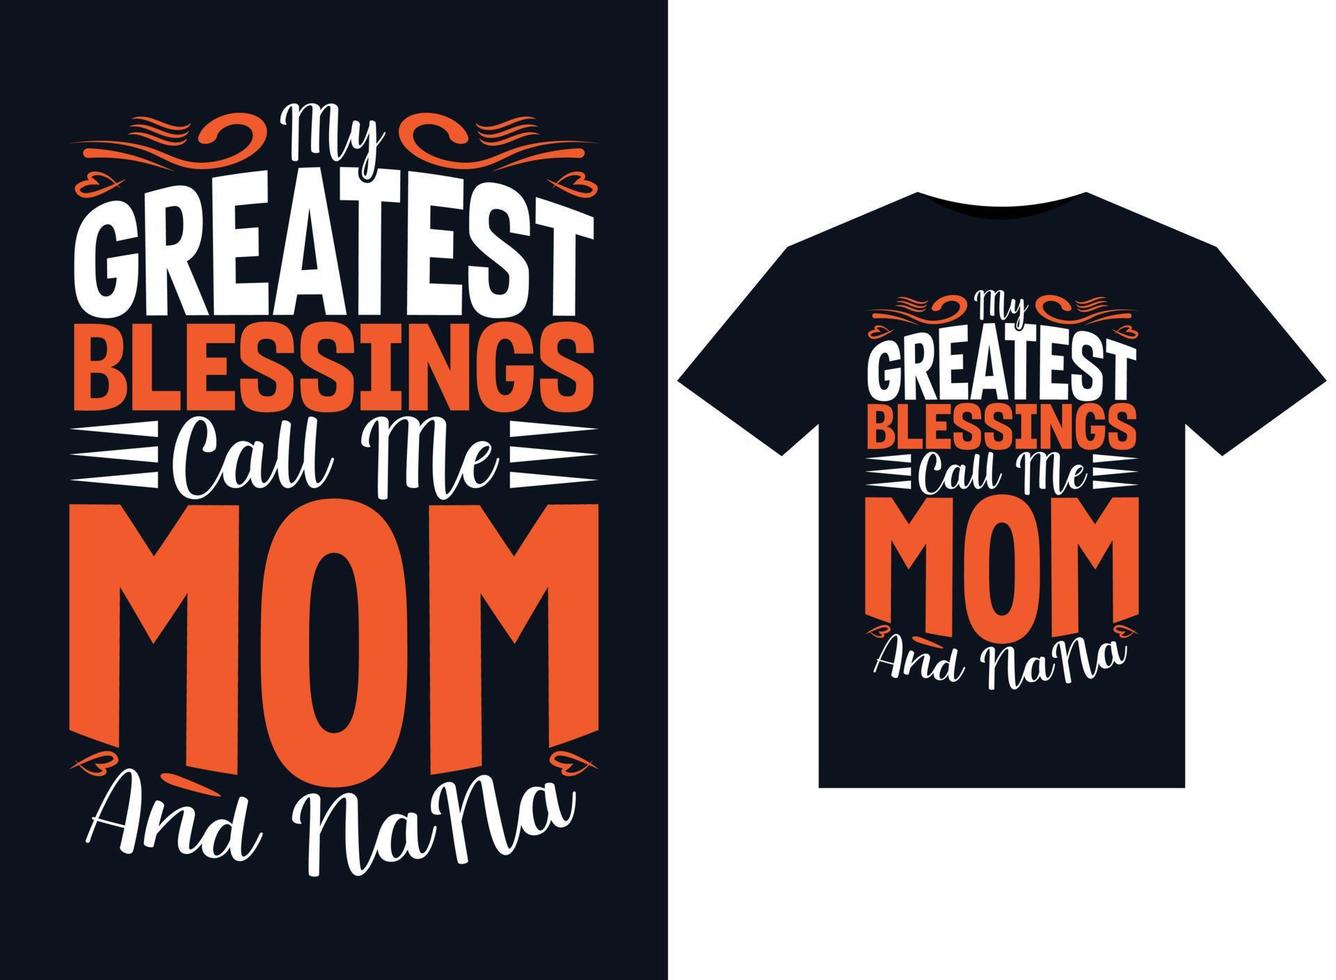 mijn beste zegeningen telefoontje me mam en nana illustraties voor drukklare t-shirts ontwerp vector